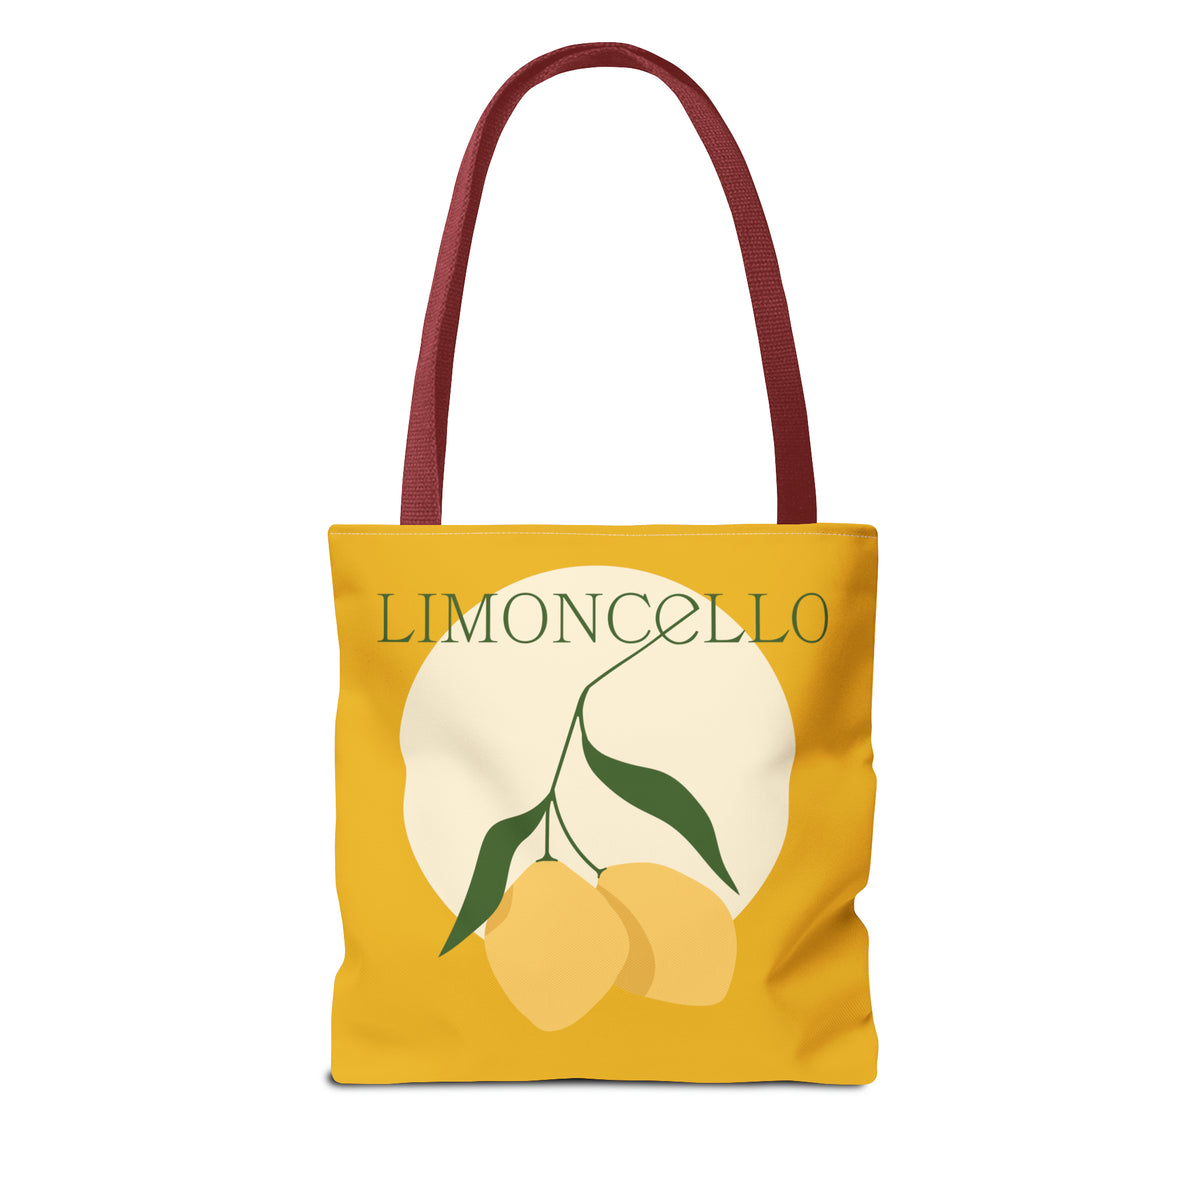 Limoncello Tote Bag